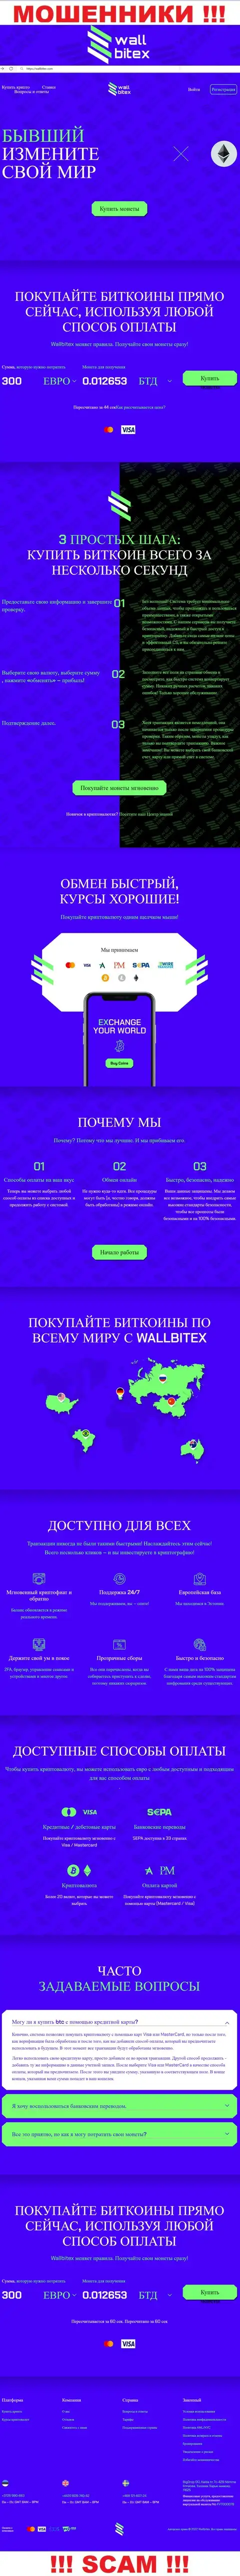 WallBitex Com - это официальный интернет-сервис мошеннической конторы Валл Битекс